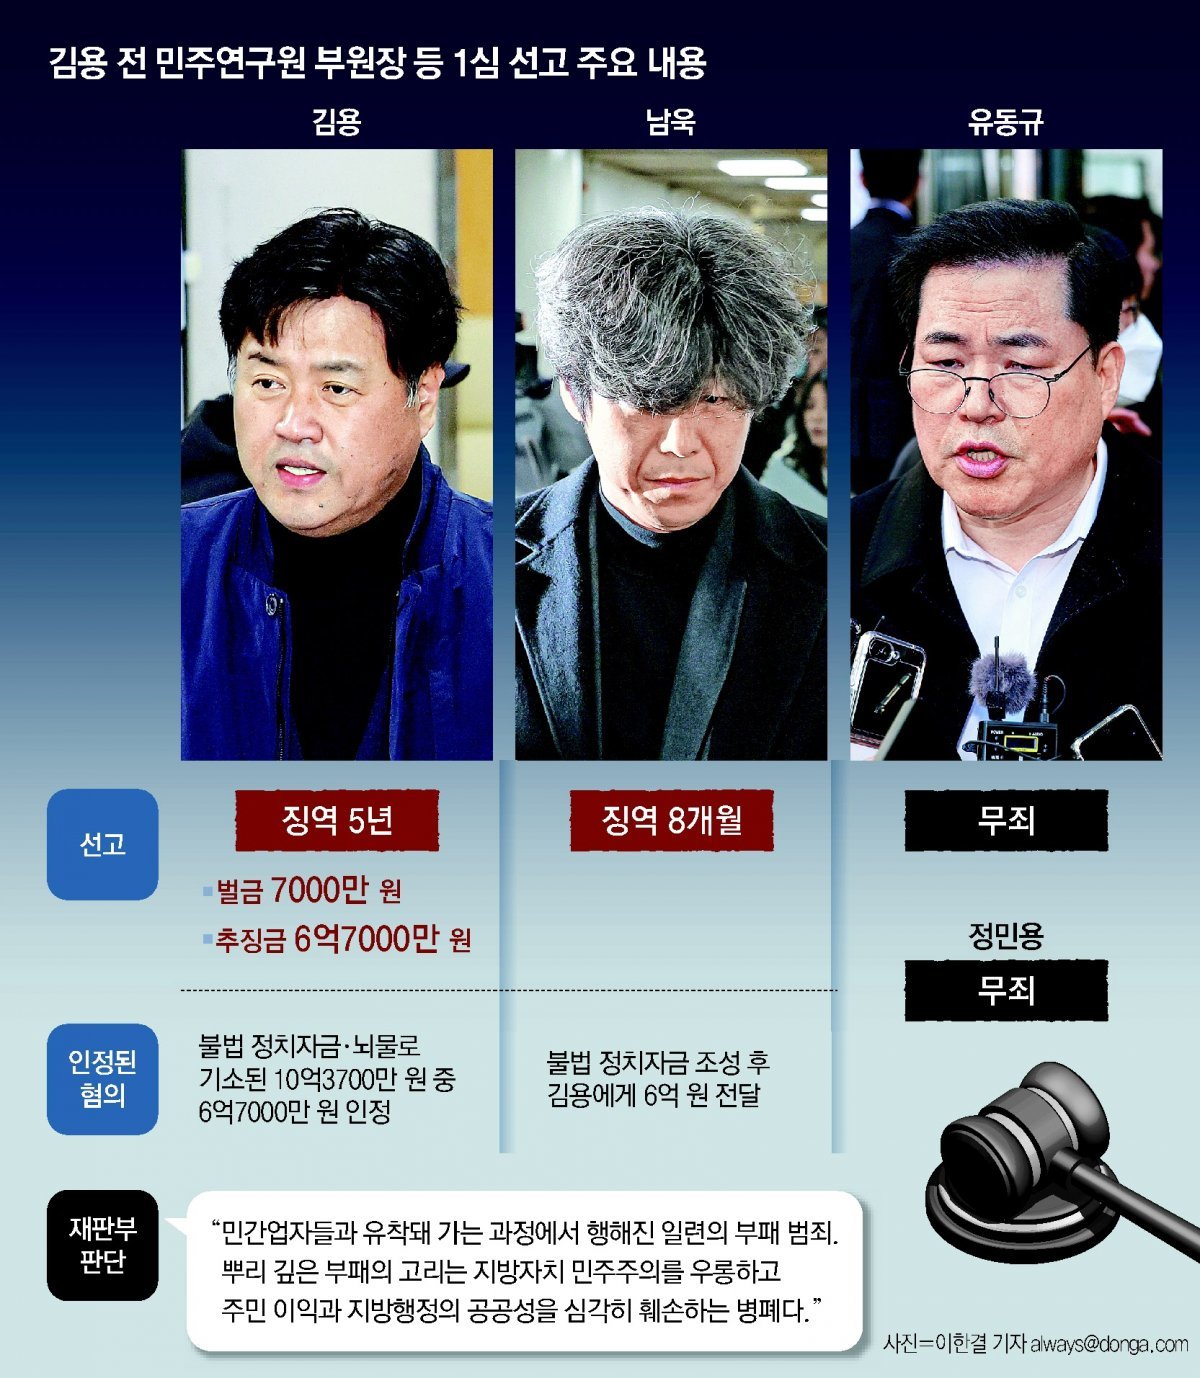 김용 전 민주연구원 부원장 등 1심 선고 주요 내용